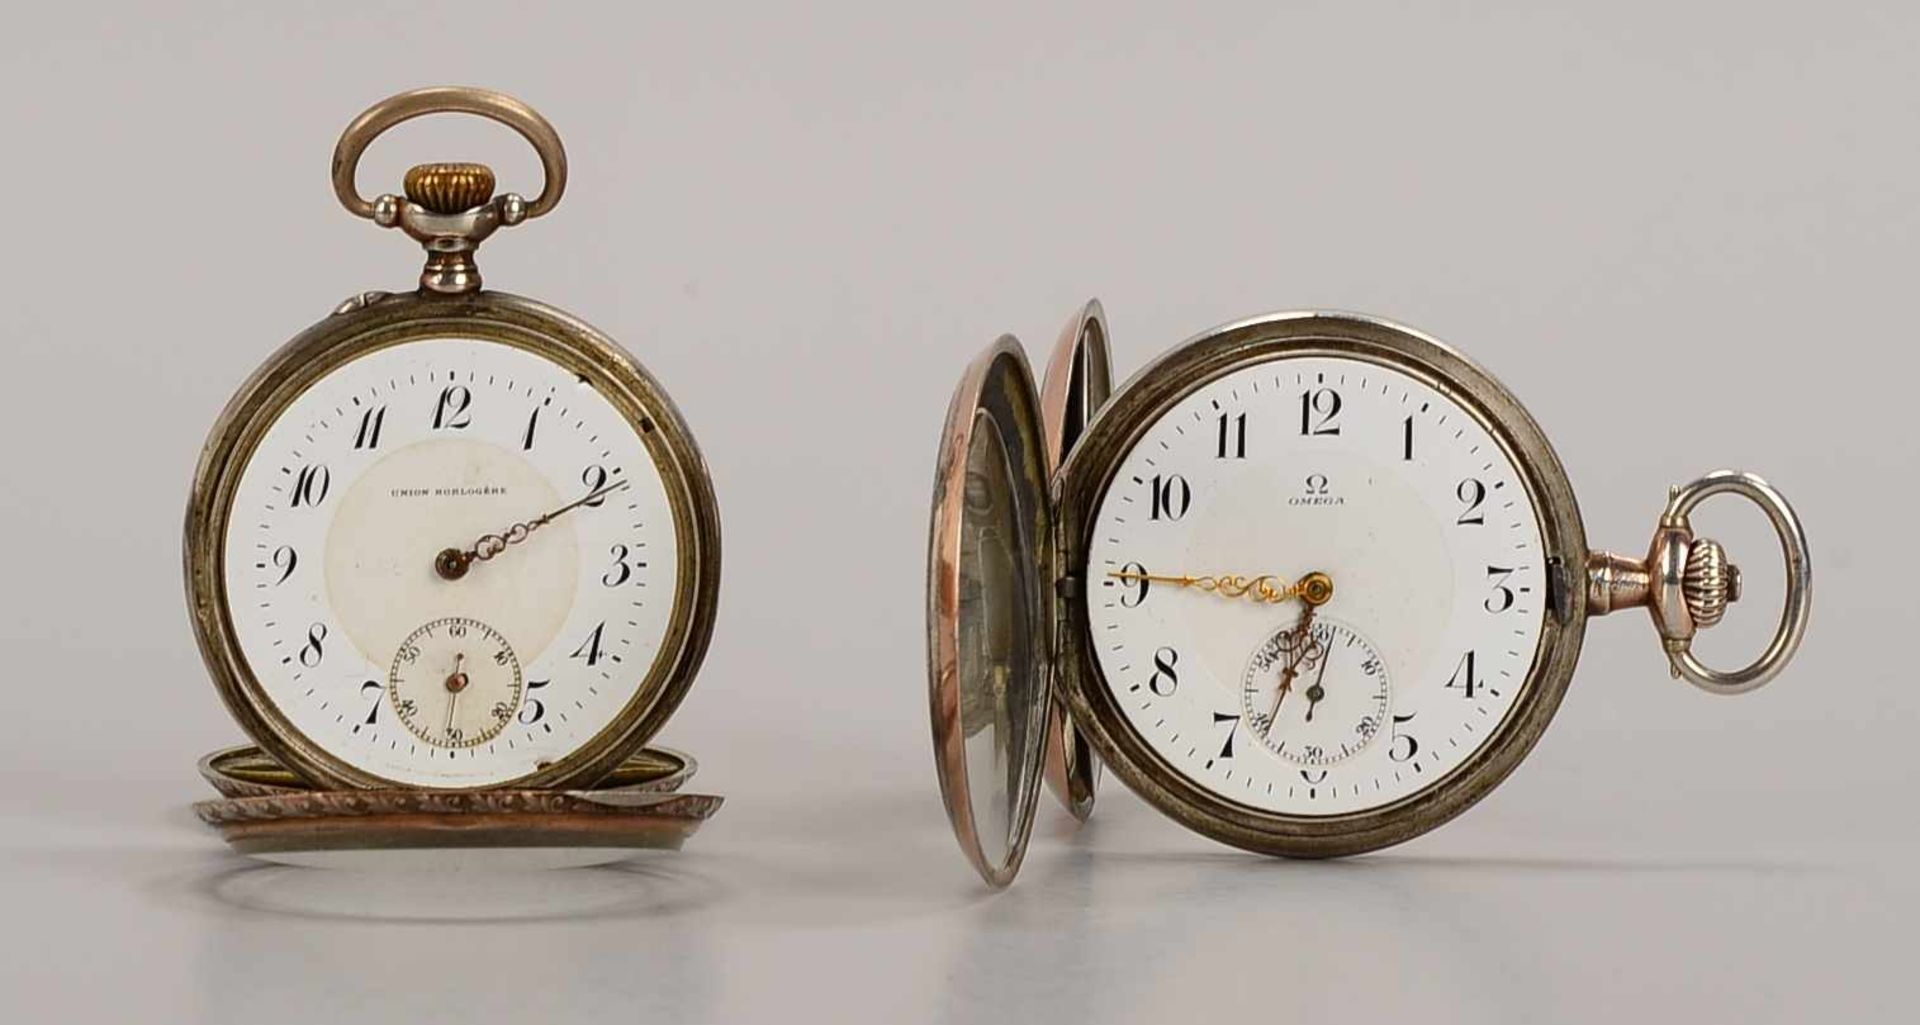 2 Taschenuhren, 800 Silber-Gehäuse: 1x Omega, läuft; und 1x Union Horlogère, läuft an; Durchmesser